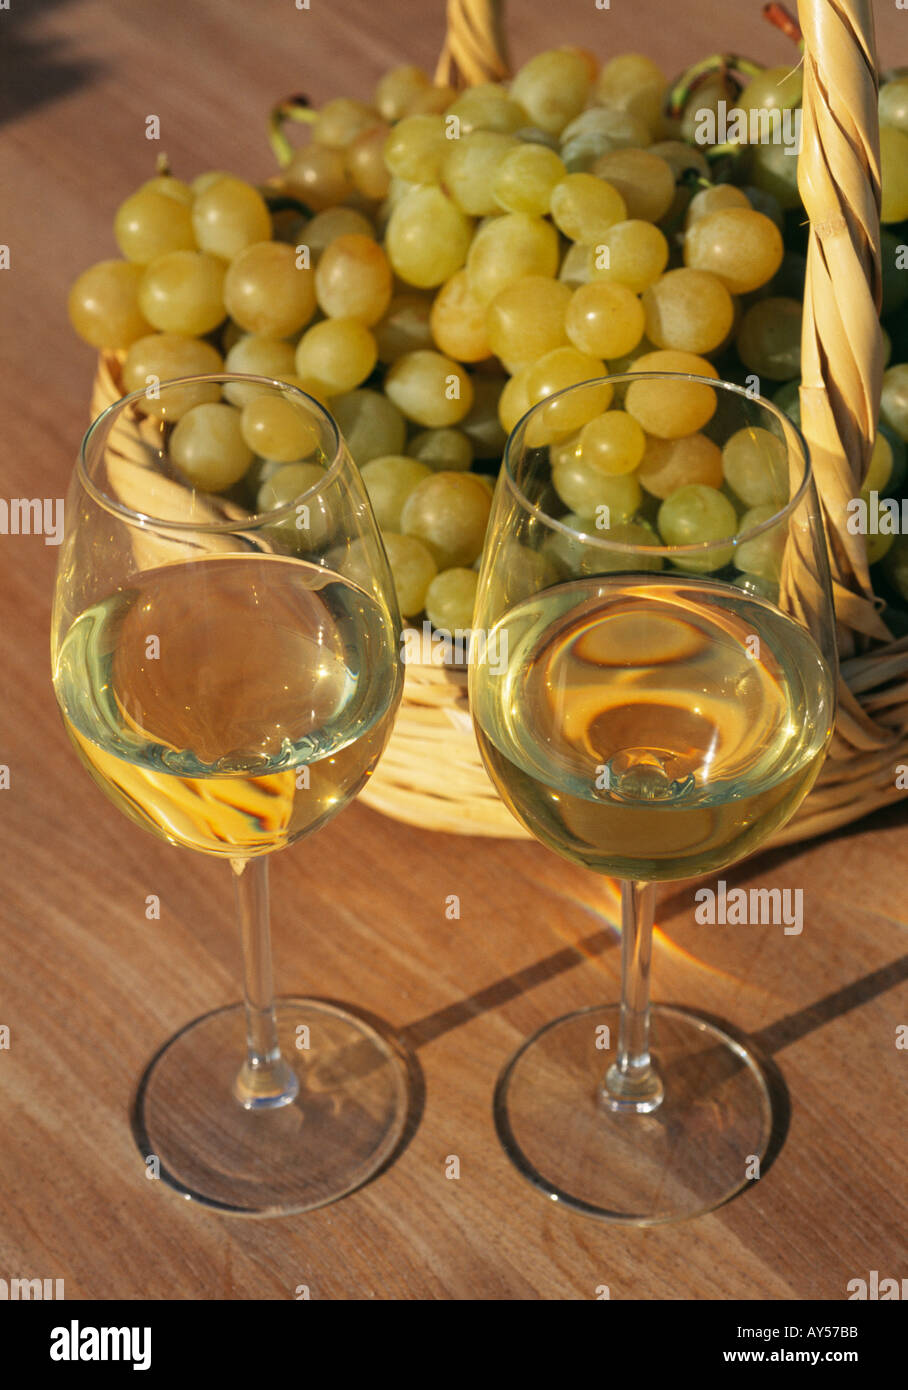 Deux verres de vin blanc avec des raisins récoltés à la main dans un panier en osier Banque D'Images